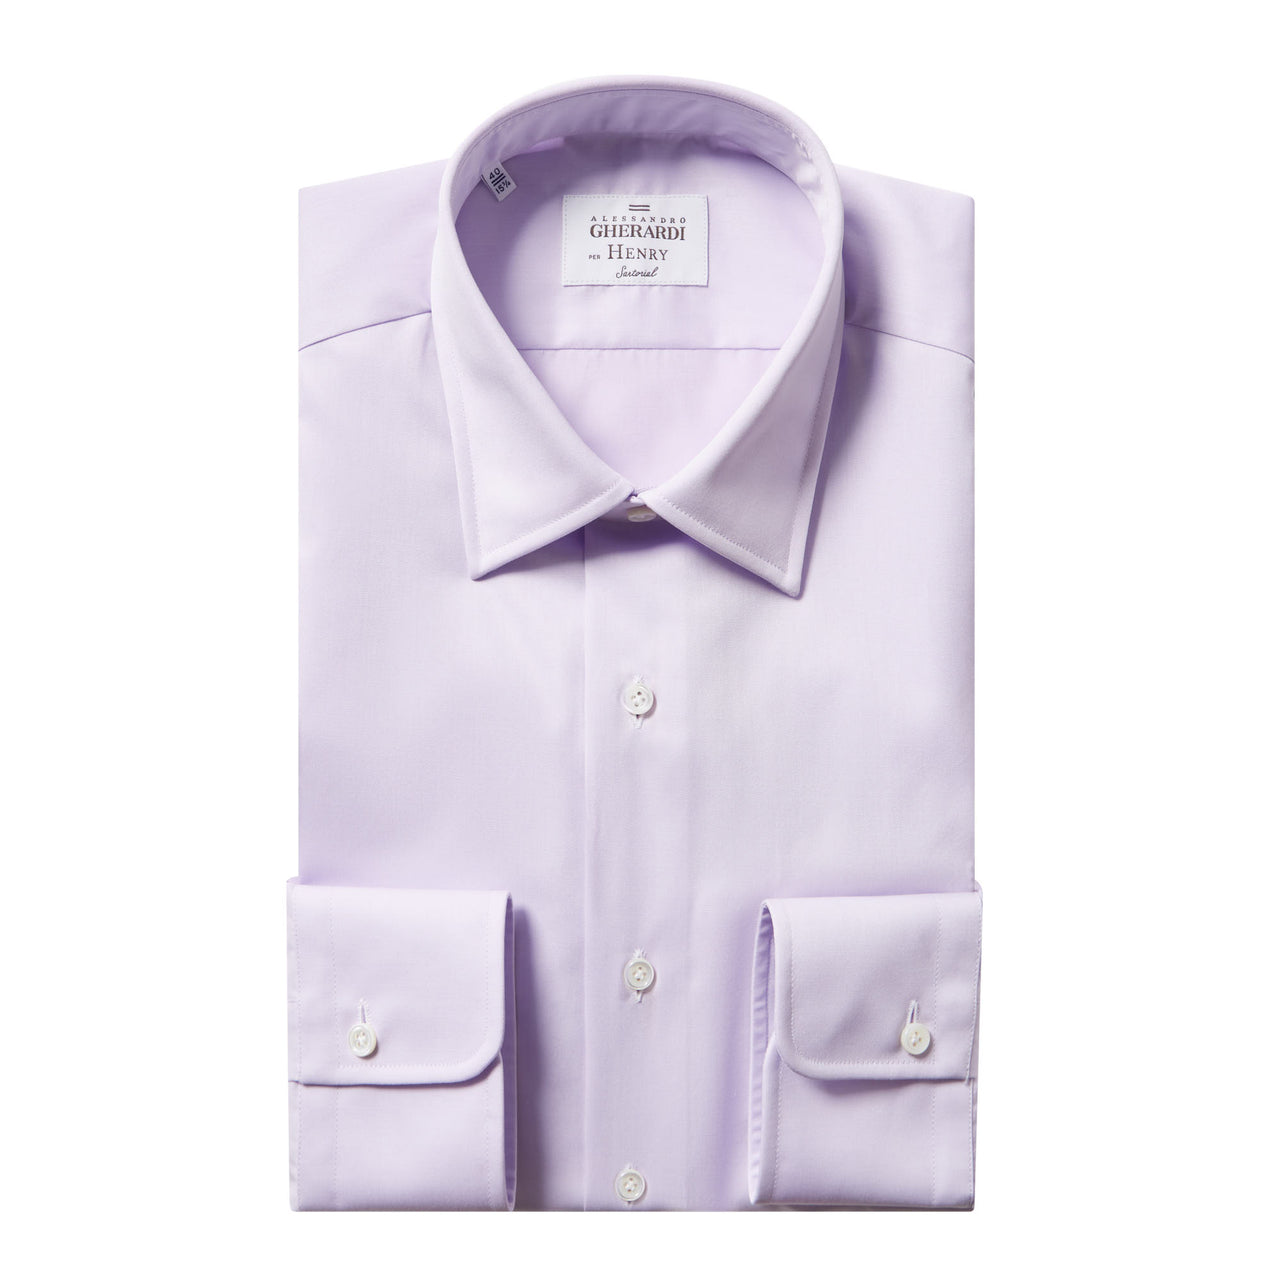 HENRY SARTORIAL X GHERARDI Classic Fit Twill Shirt Single Cuff LIGHT PINK